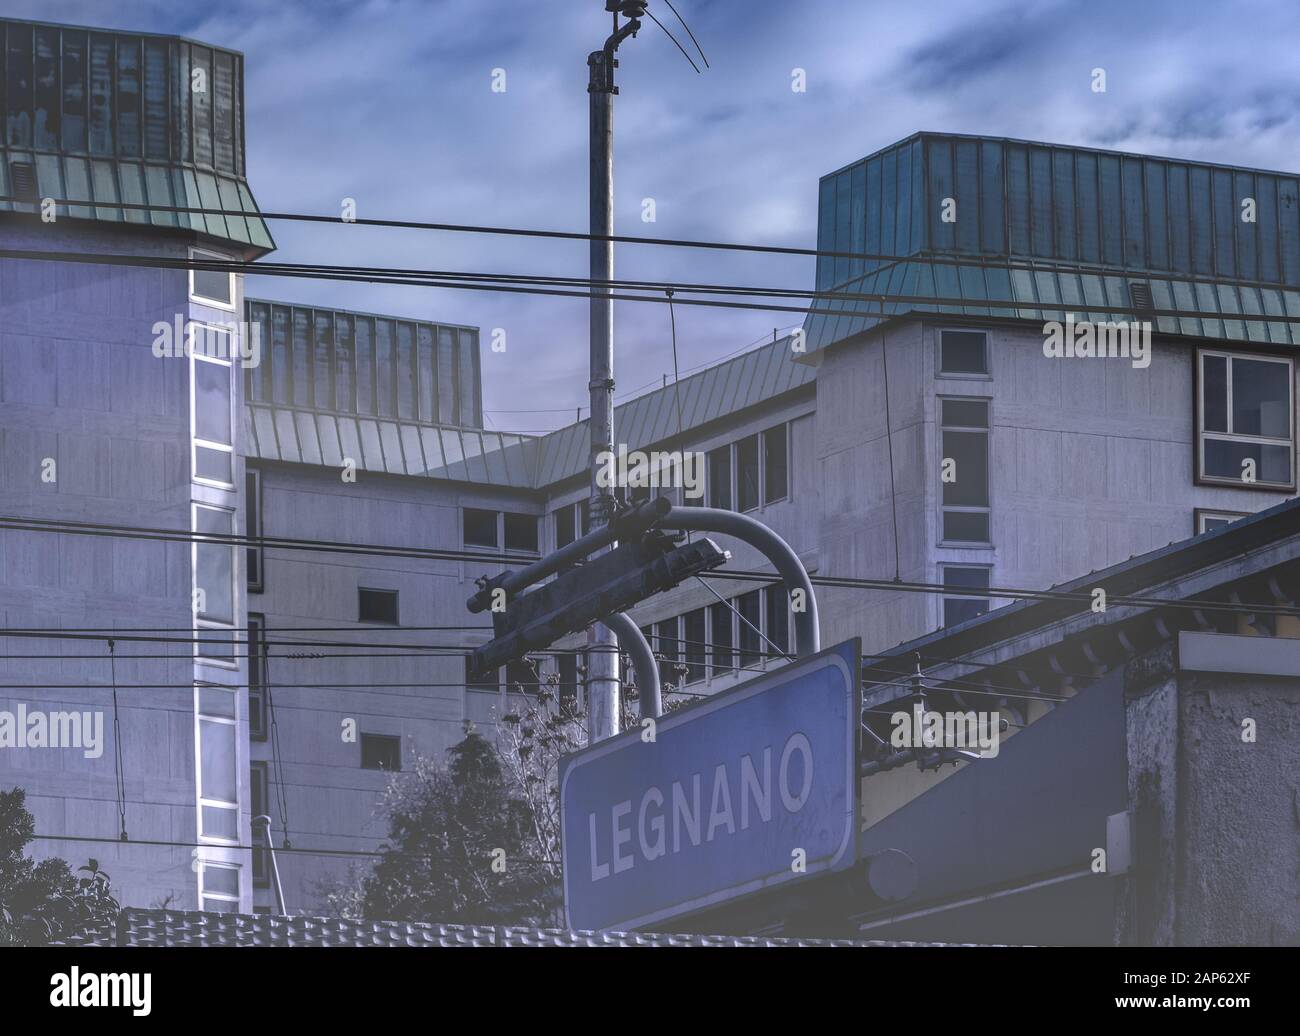 Accedi alla stazione ferroviaria di Legnano indicando il nome della città Foto Stock